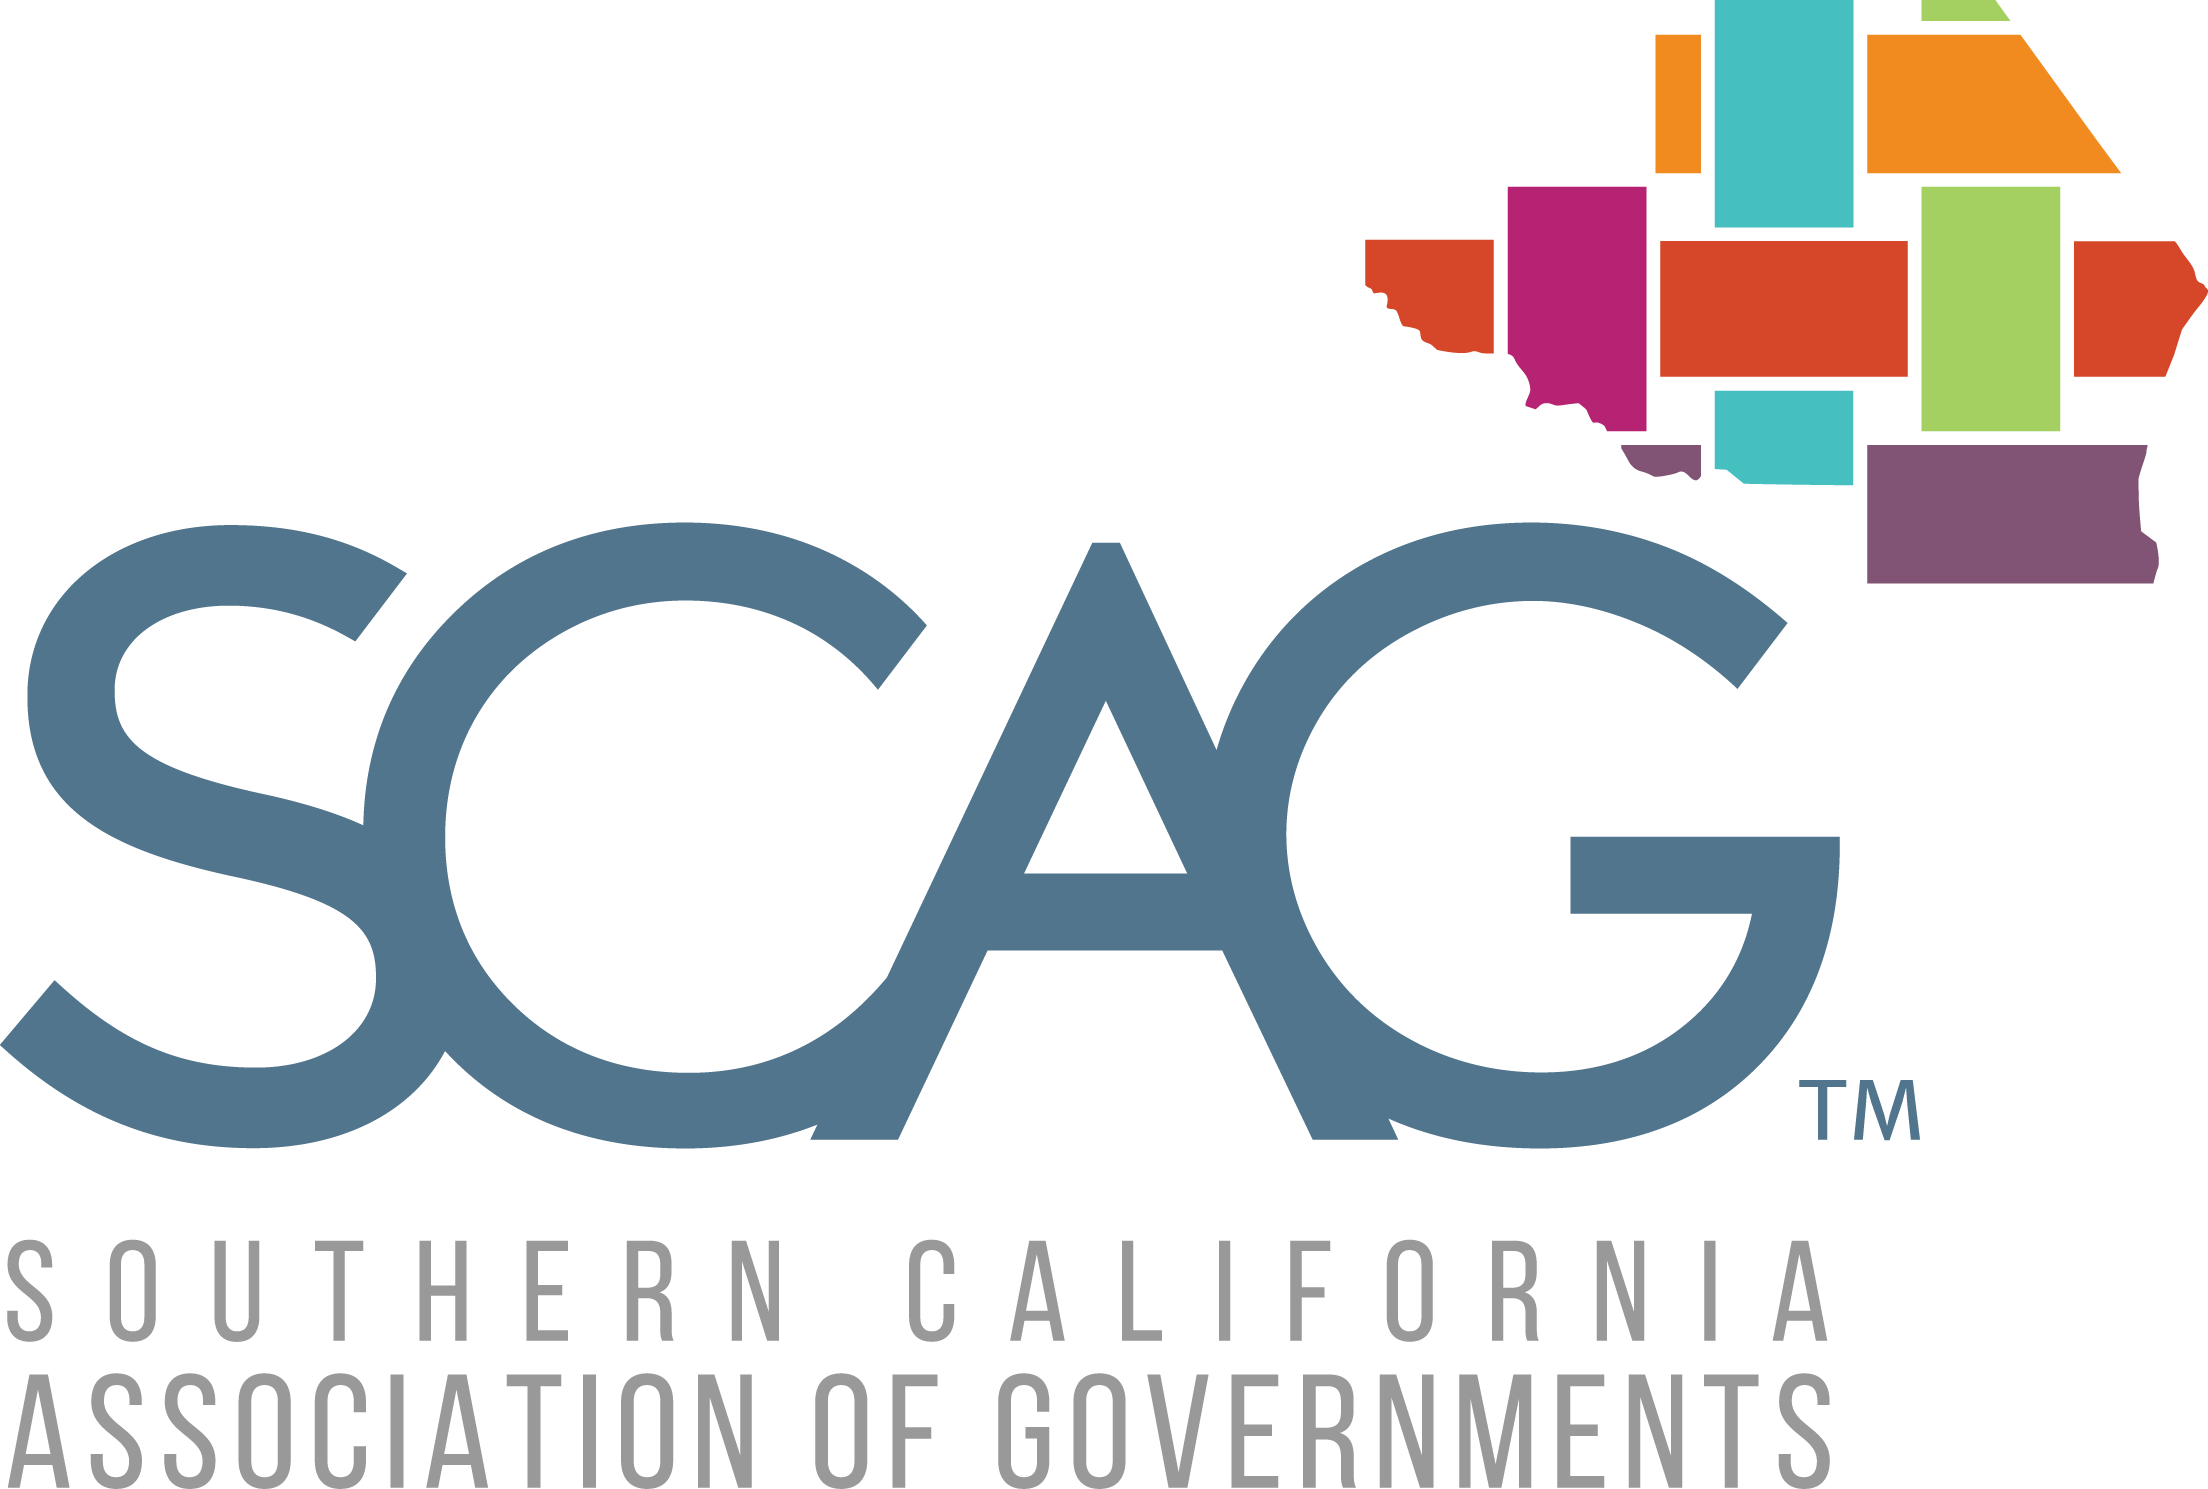 SCAG logo